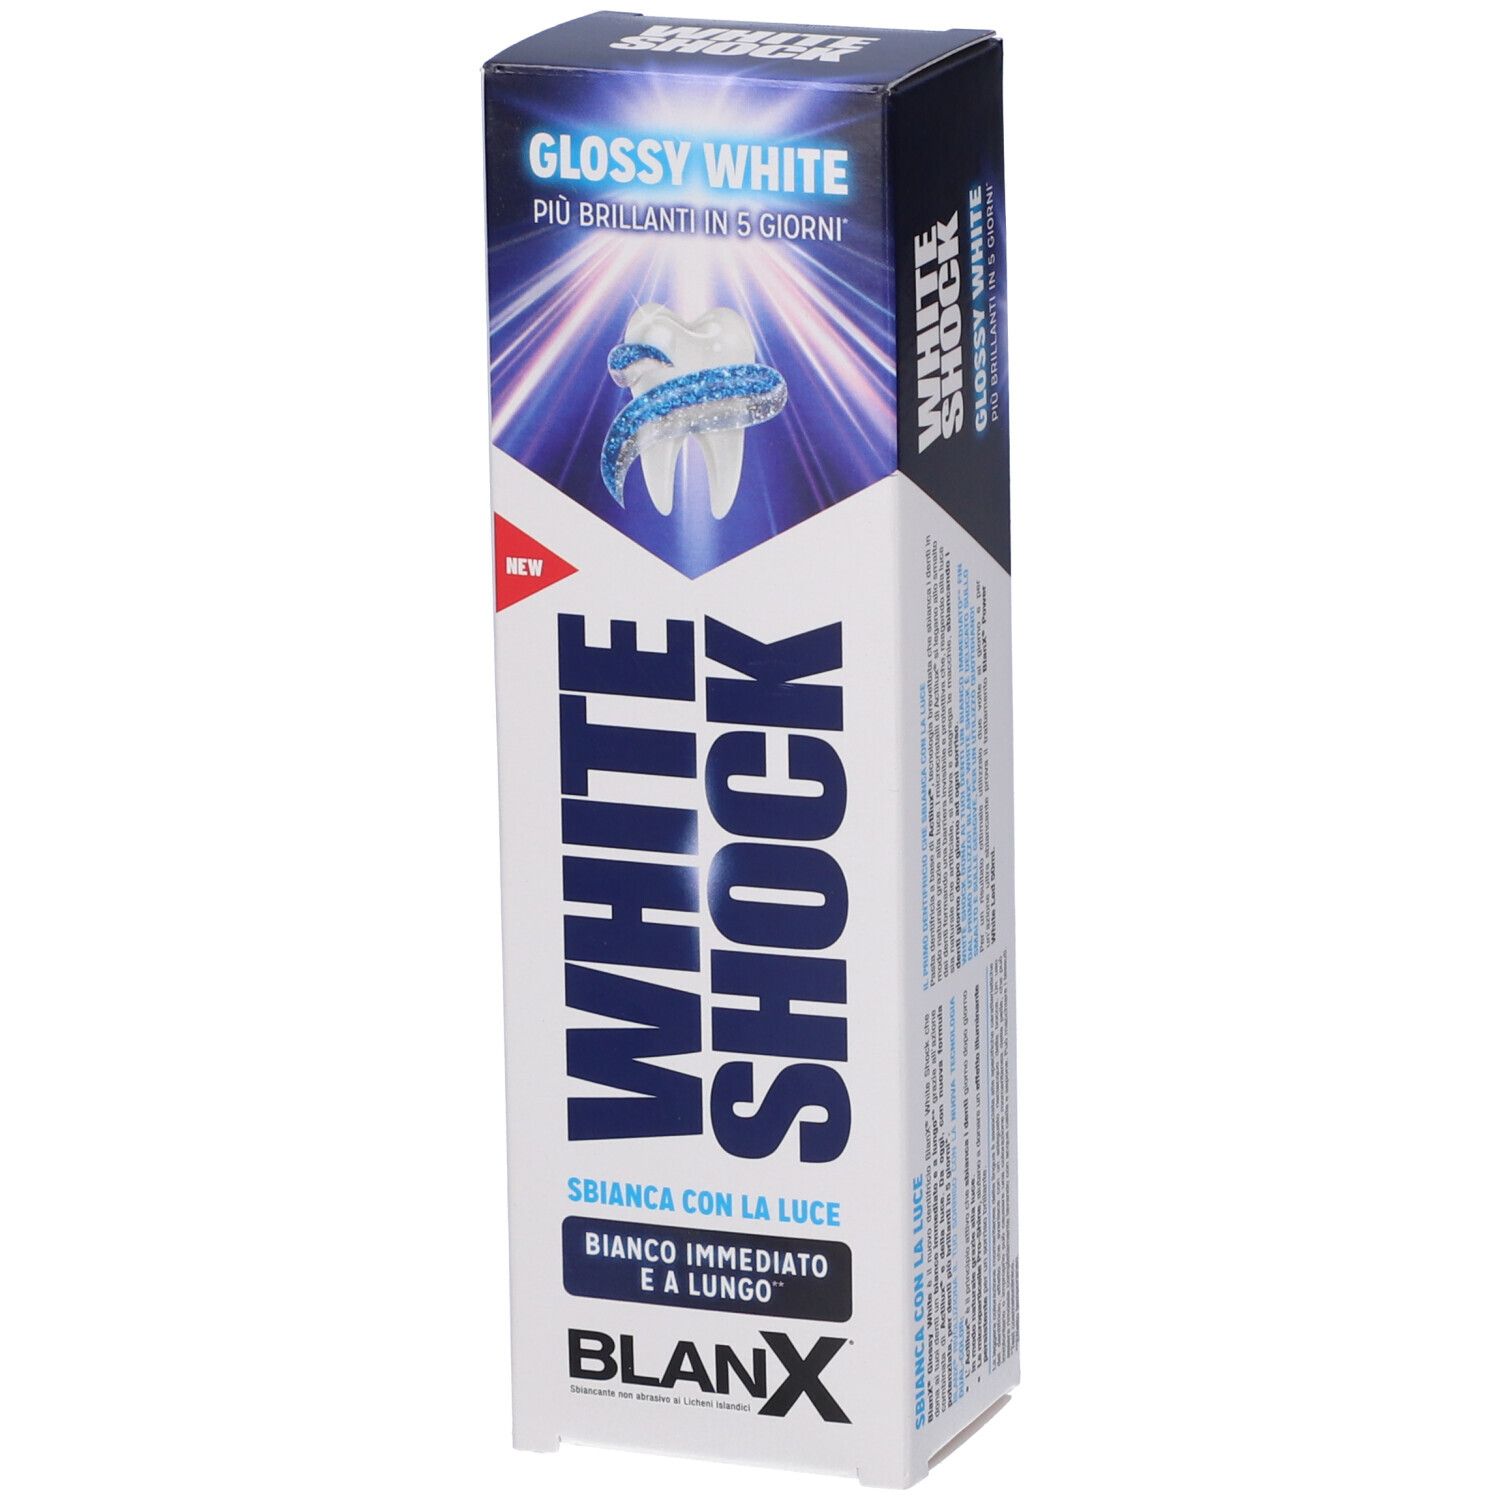 BlanX® white shock Dentifricio sbiancante